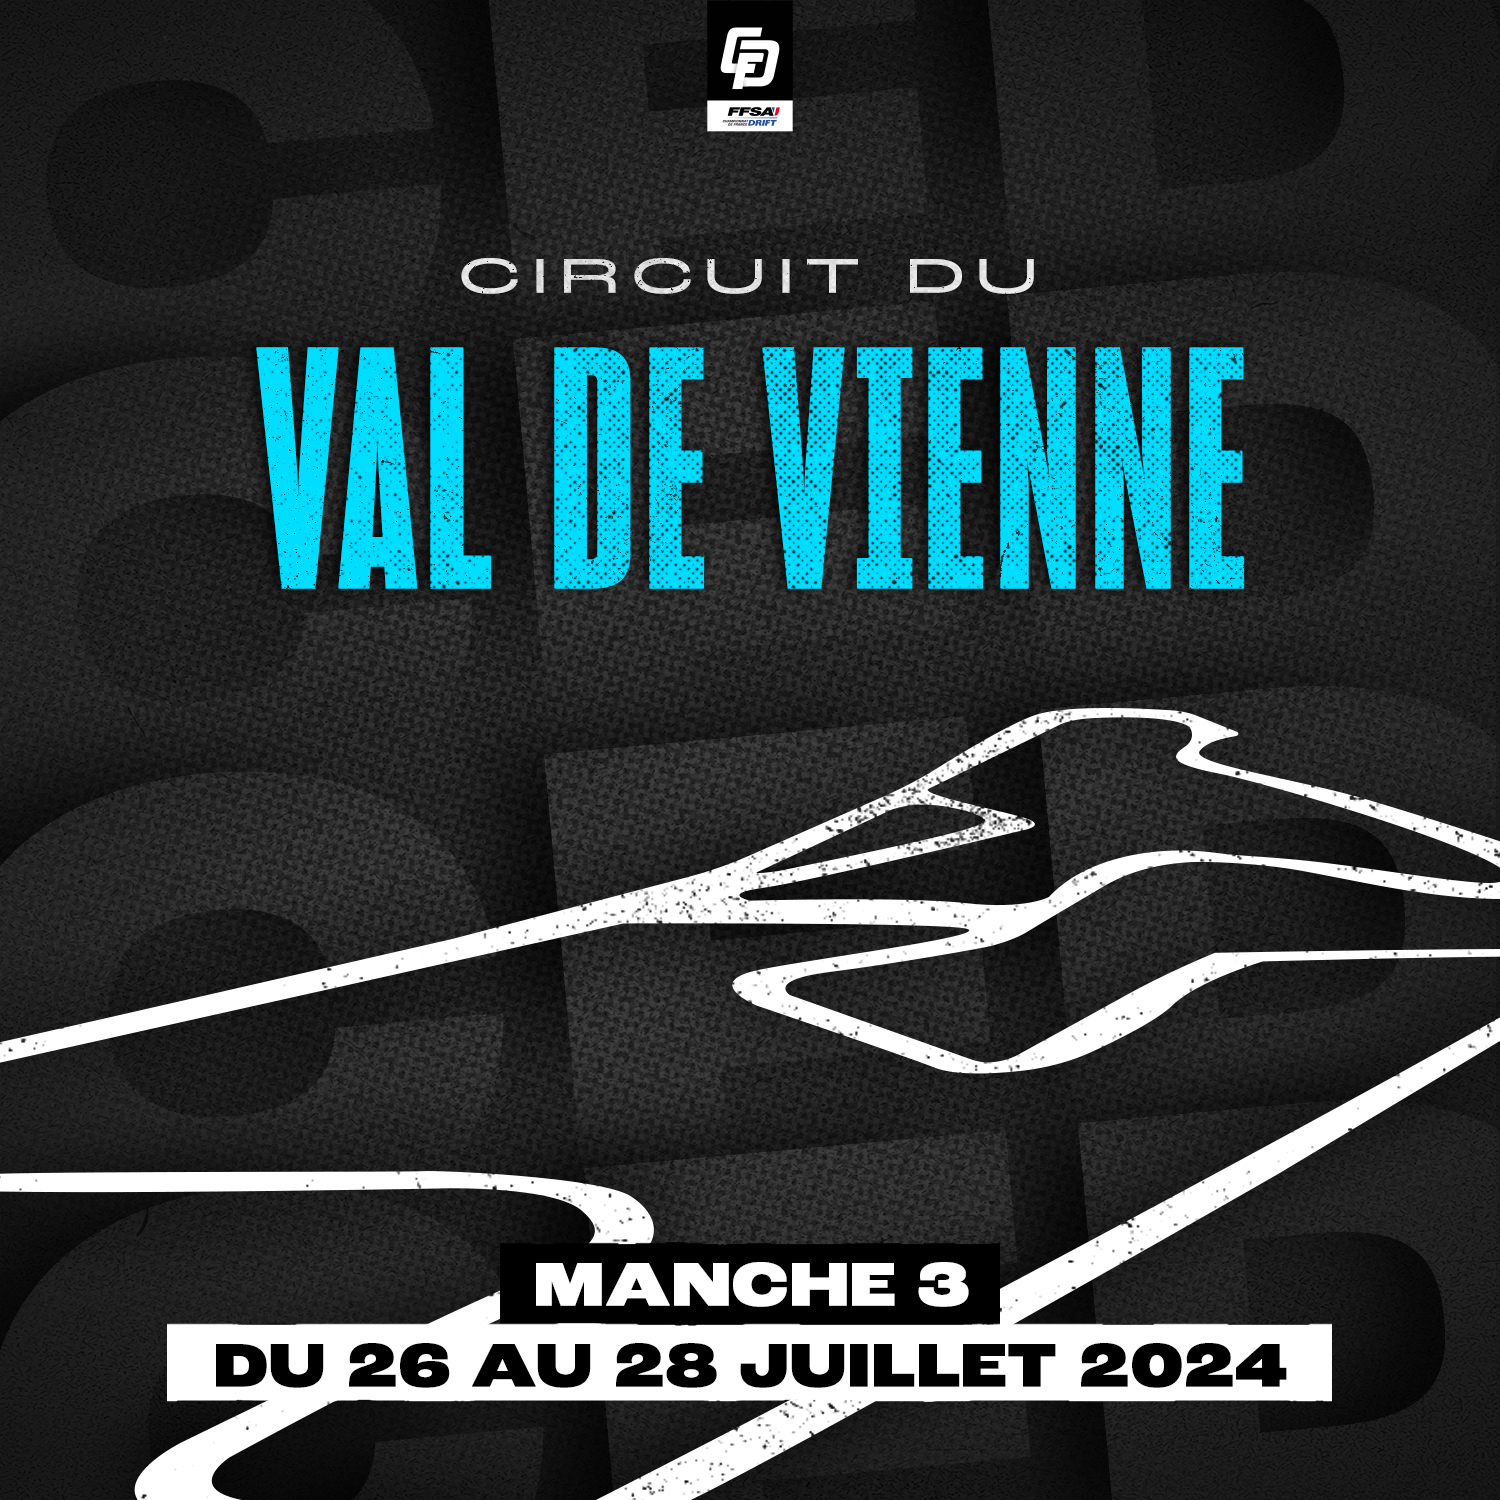 Du 26 au 28 juillet 2024, le Circuit Val de Vienne accueille la troisième manche du Championnat de France de Drift. Ne manquez pas cet événement spectaculaire.